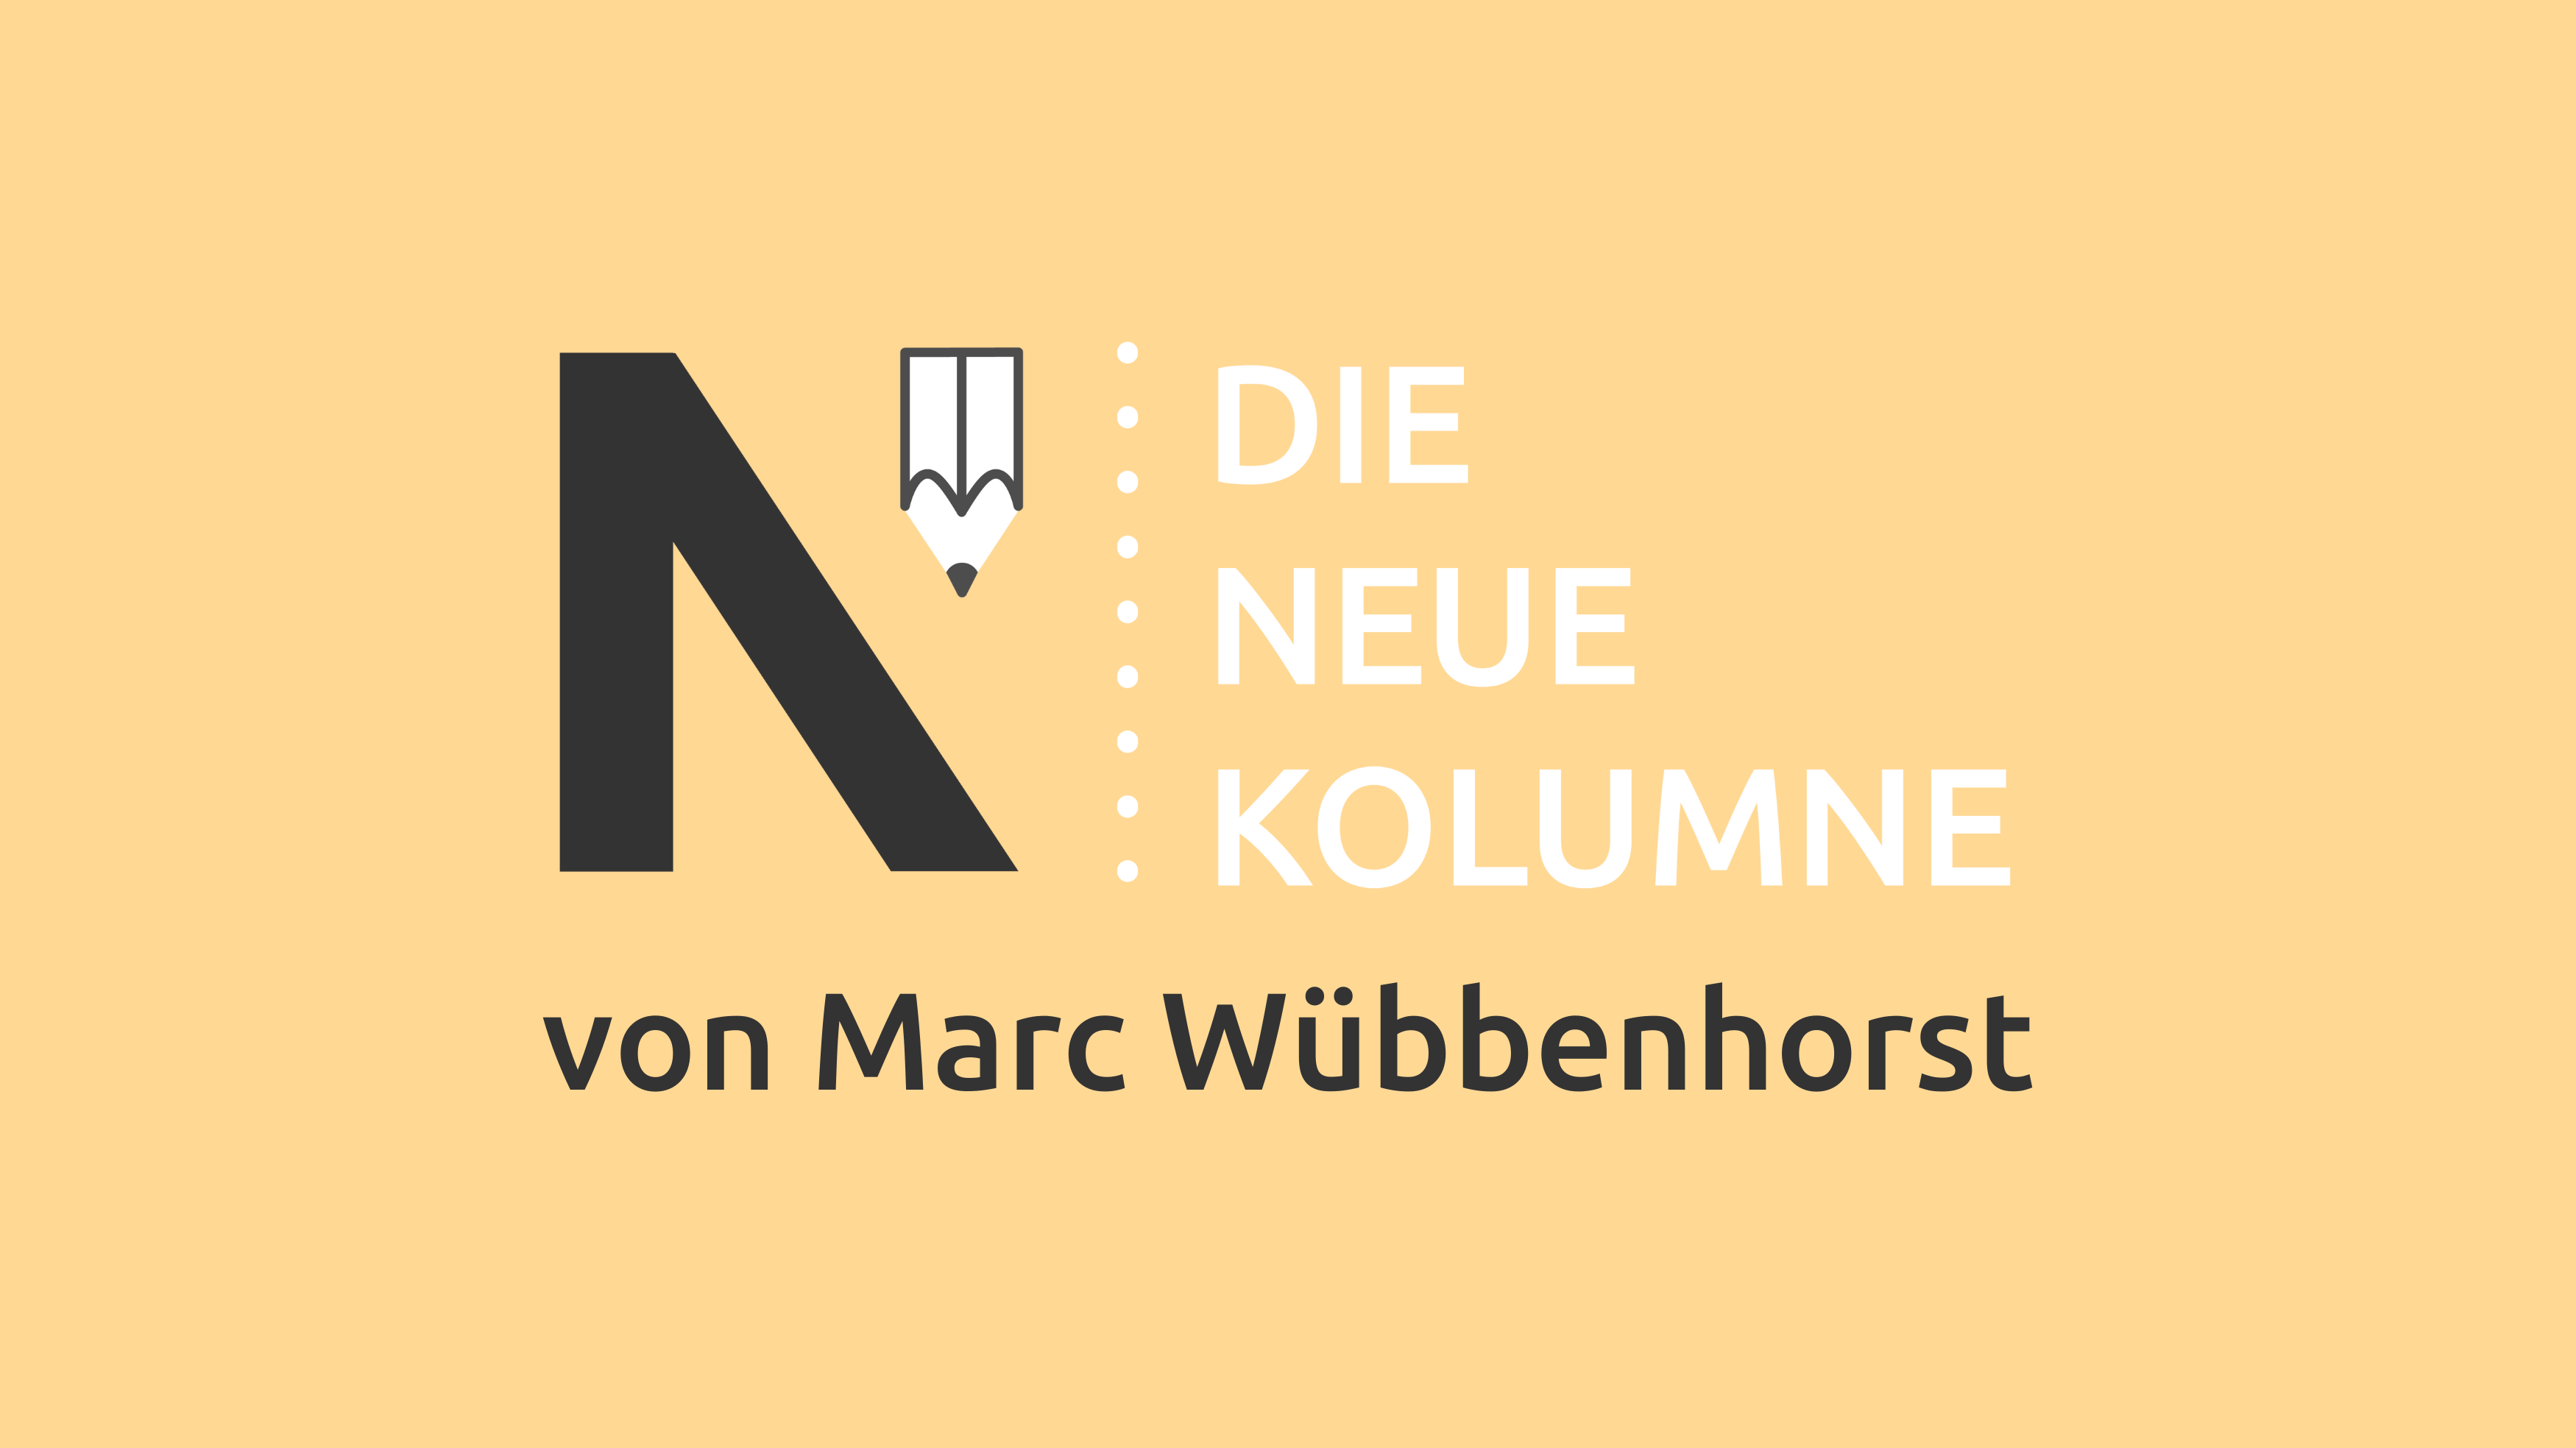 Das Logo von die neue Norm auf blass orangenem Grund. Rechts davon steht: Die Neue Kolumne. Unten steht: Von Marc Wübbenhorst.